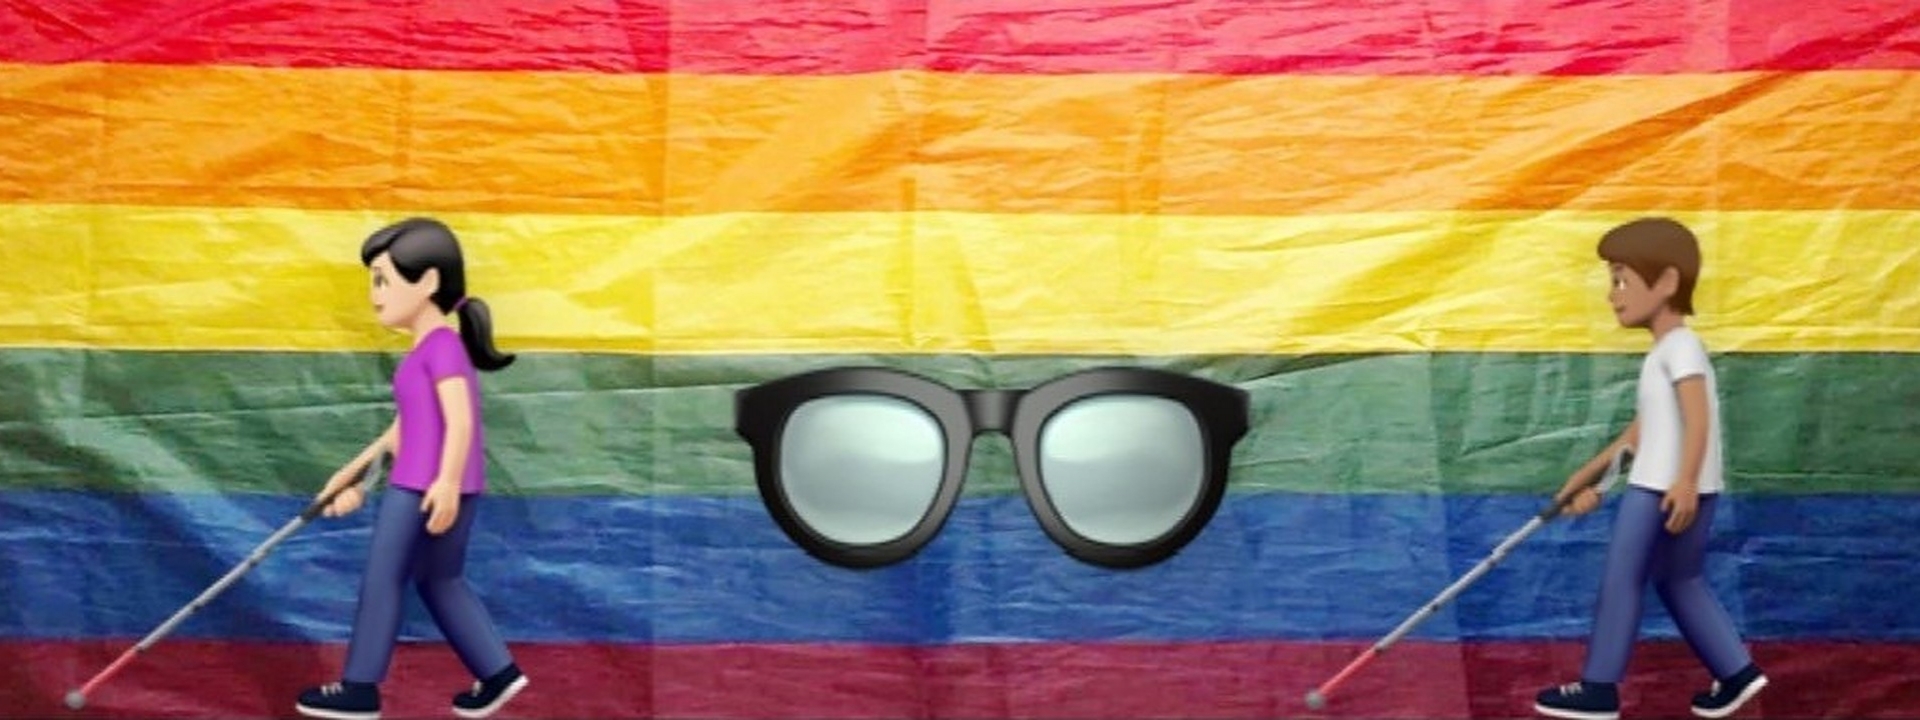 Collage: Zwei Emojii-Figuren mit Blindenstock und eine große Brille vor einer fotografierten Regenbogenflagge